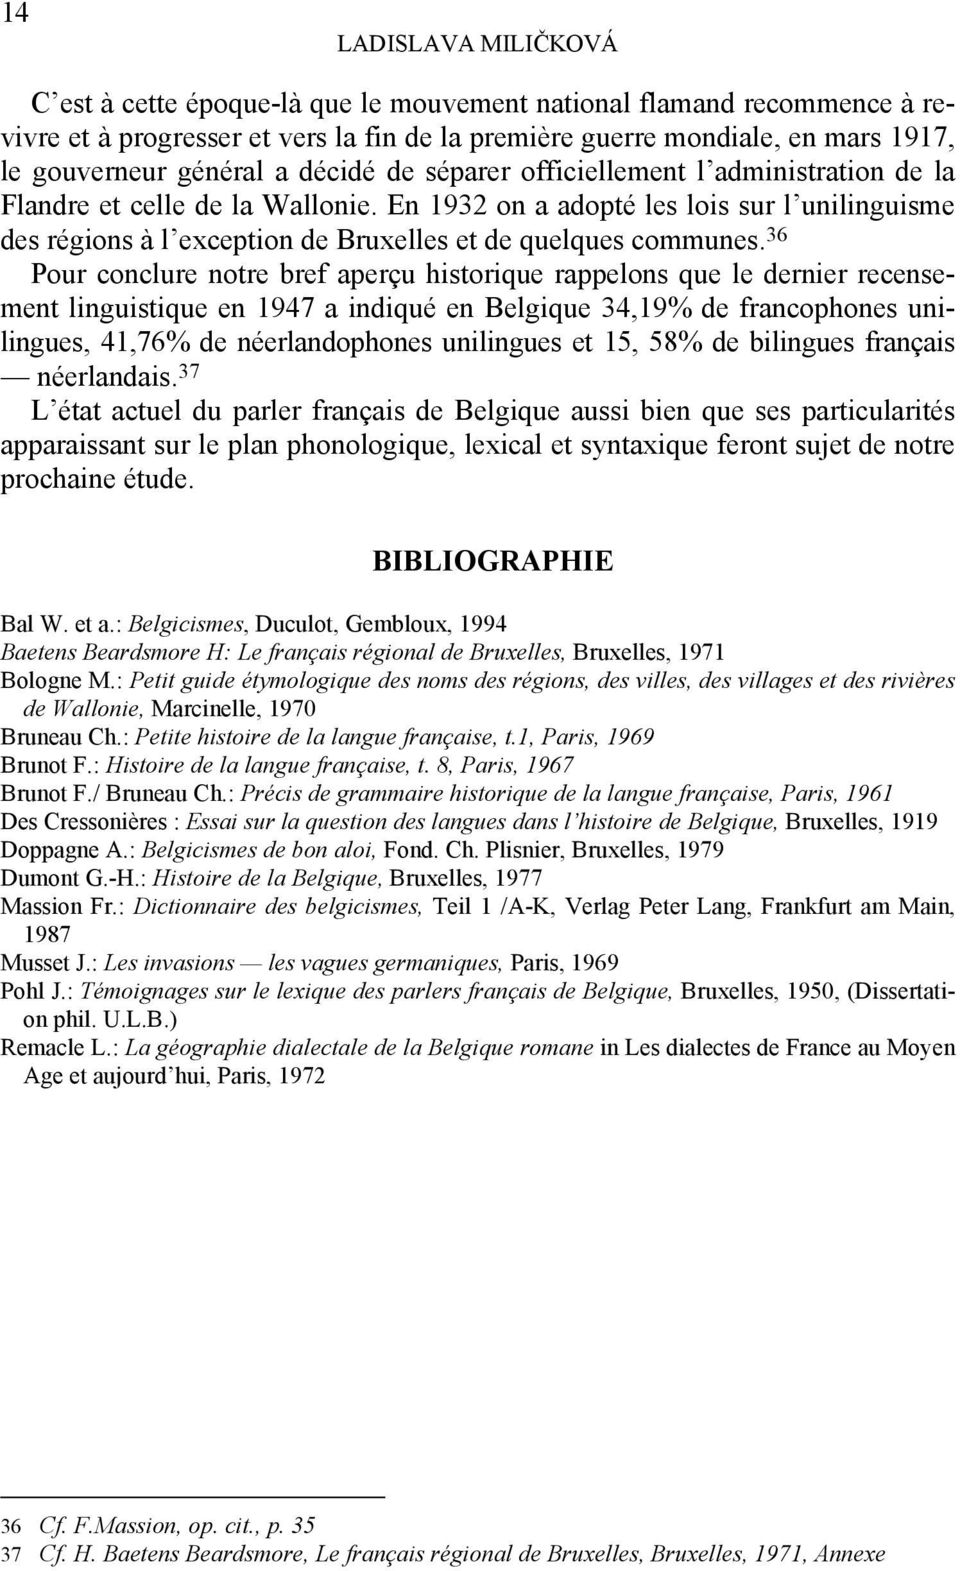 36 Pour conclure notre bref aperçu historique rappelons que le dernier recensement linguistique en 1947 a indiqué en Belgique 34,19% de francophones unilingues, 41,76% de néerlandophones unilingues